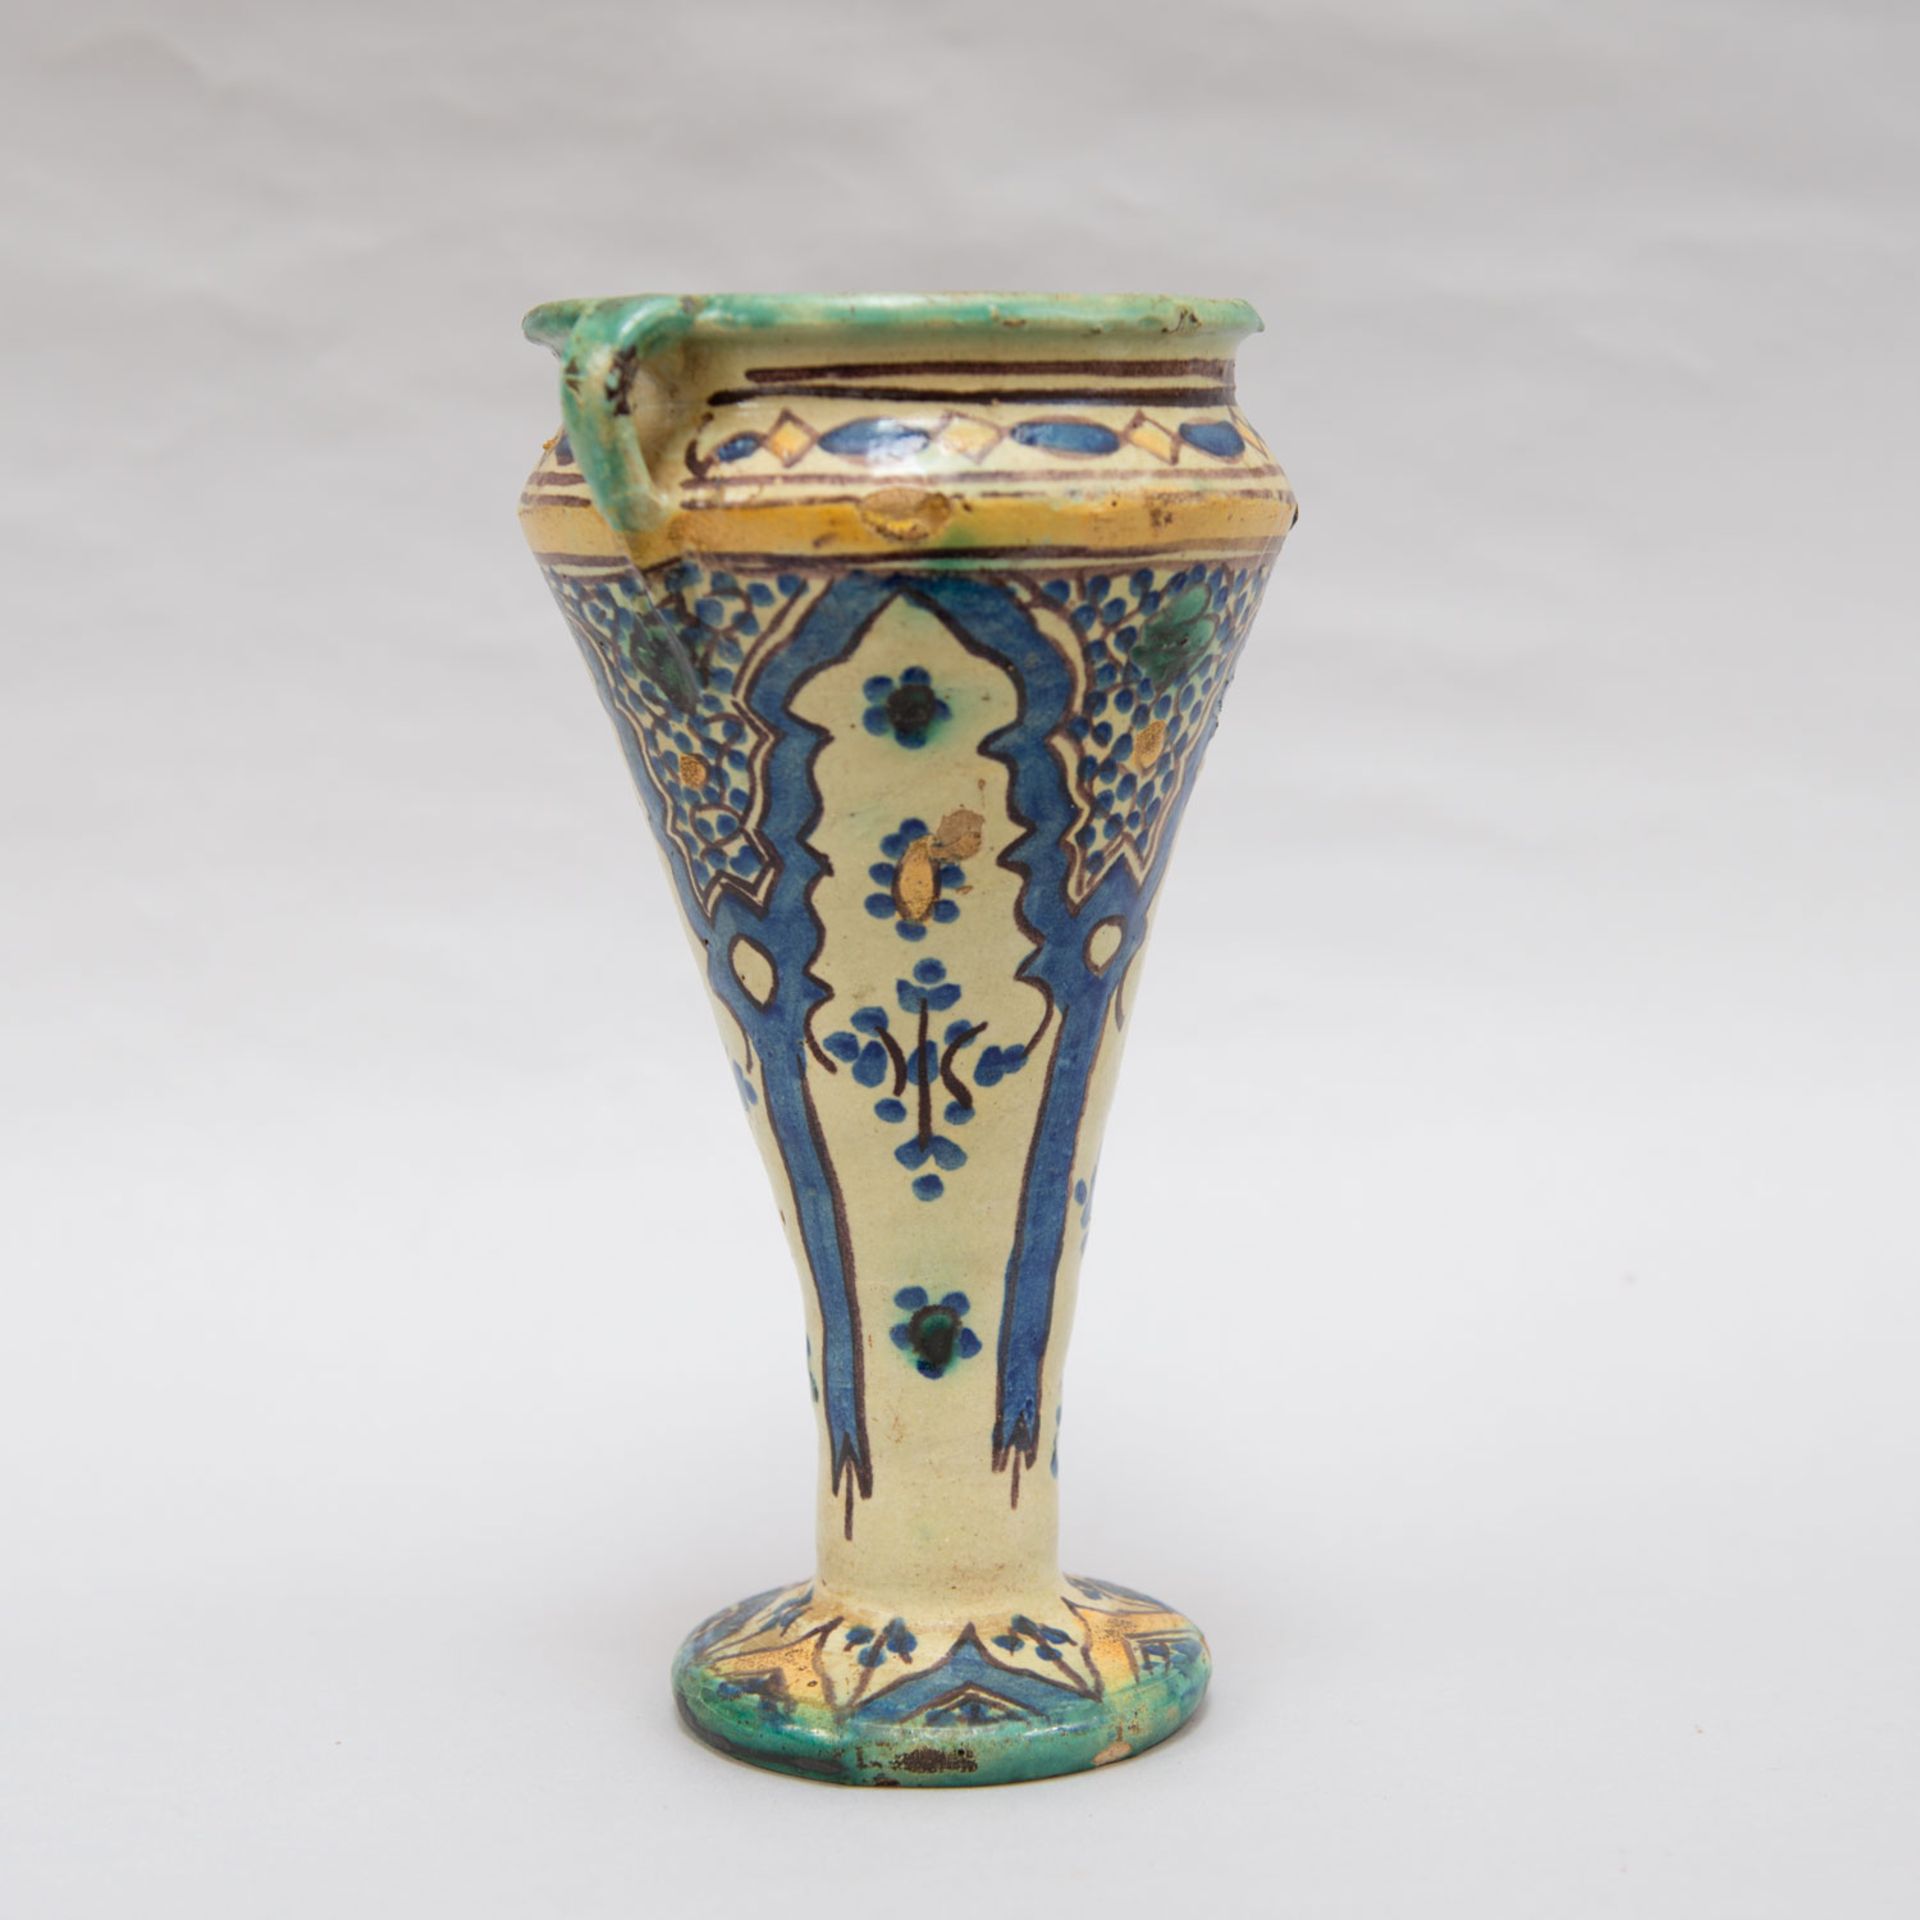 North African ceramic vase - Image 2 of 3